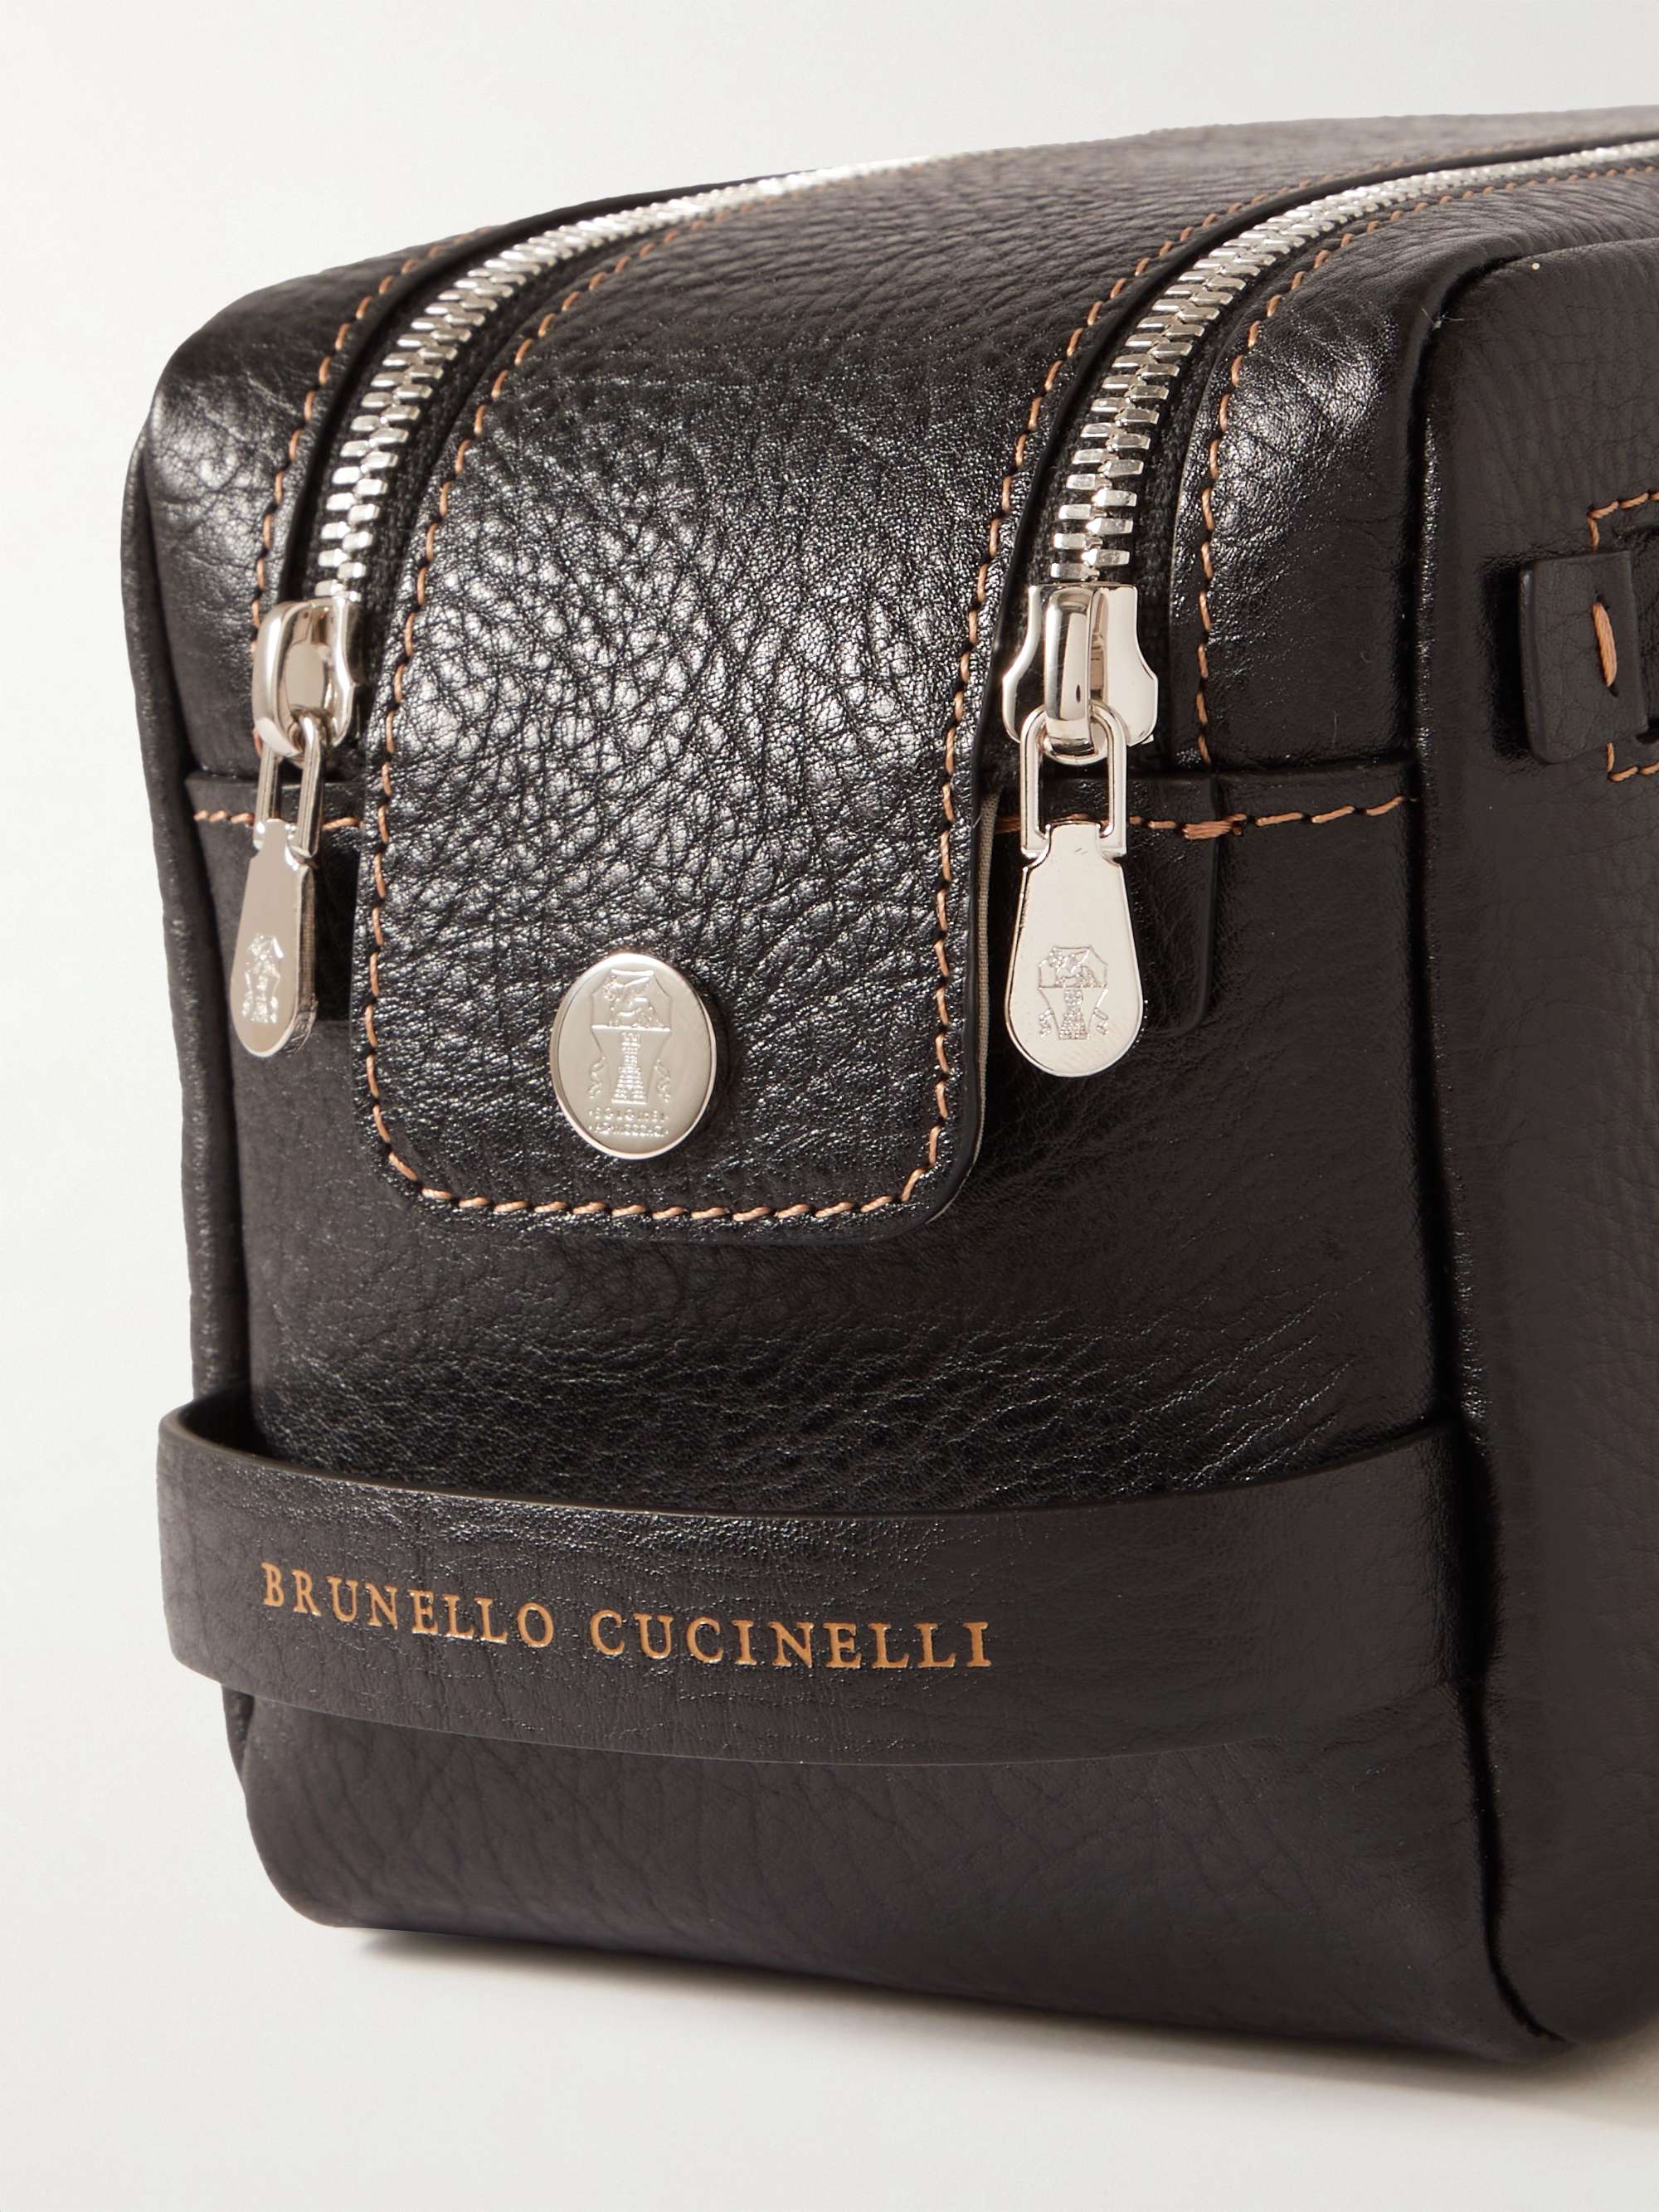 BRUNELLO CUCINELLI Full-Grain Leather Wash Bag